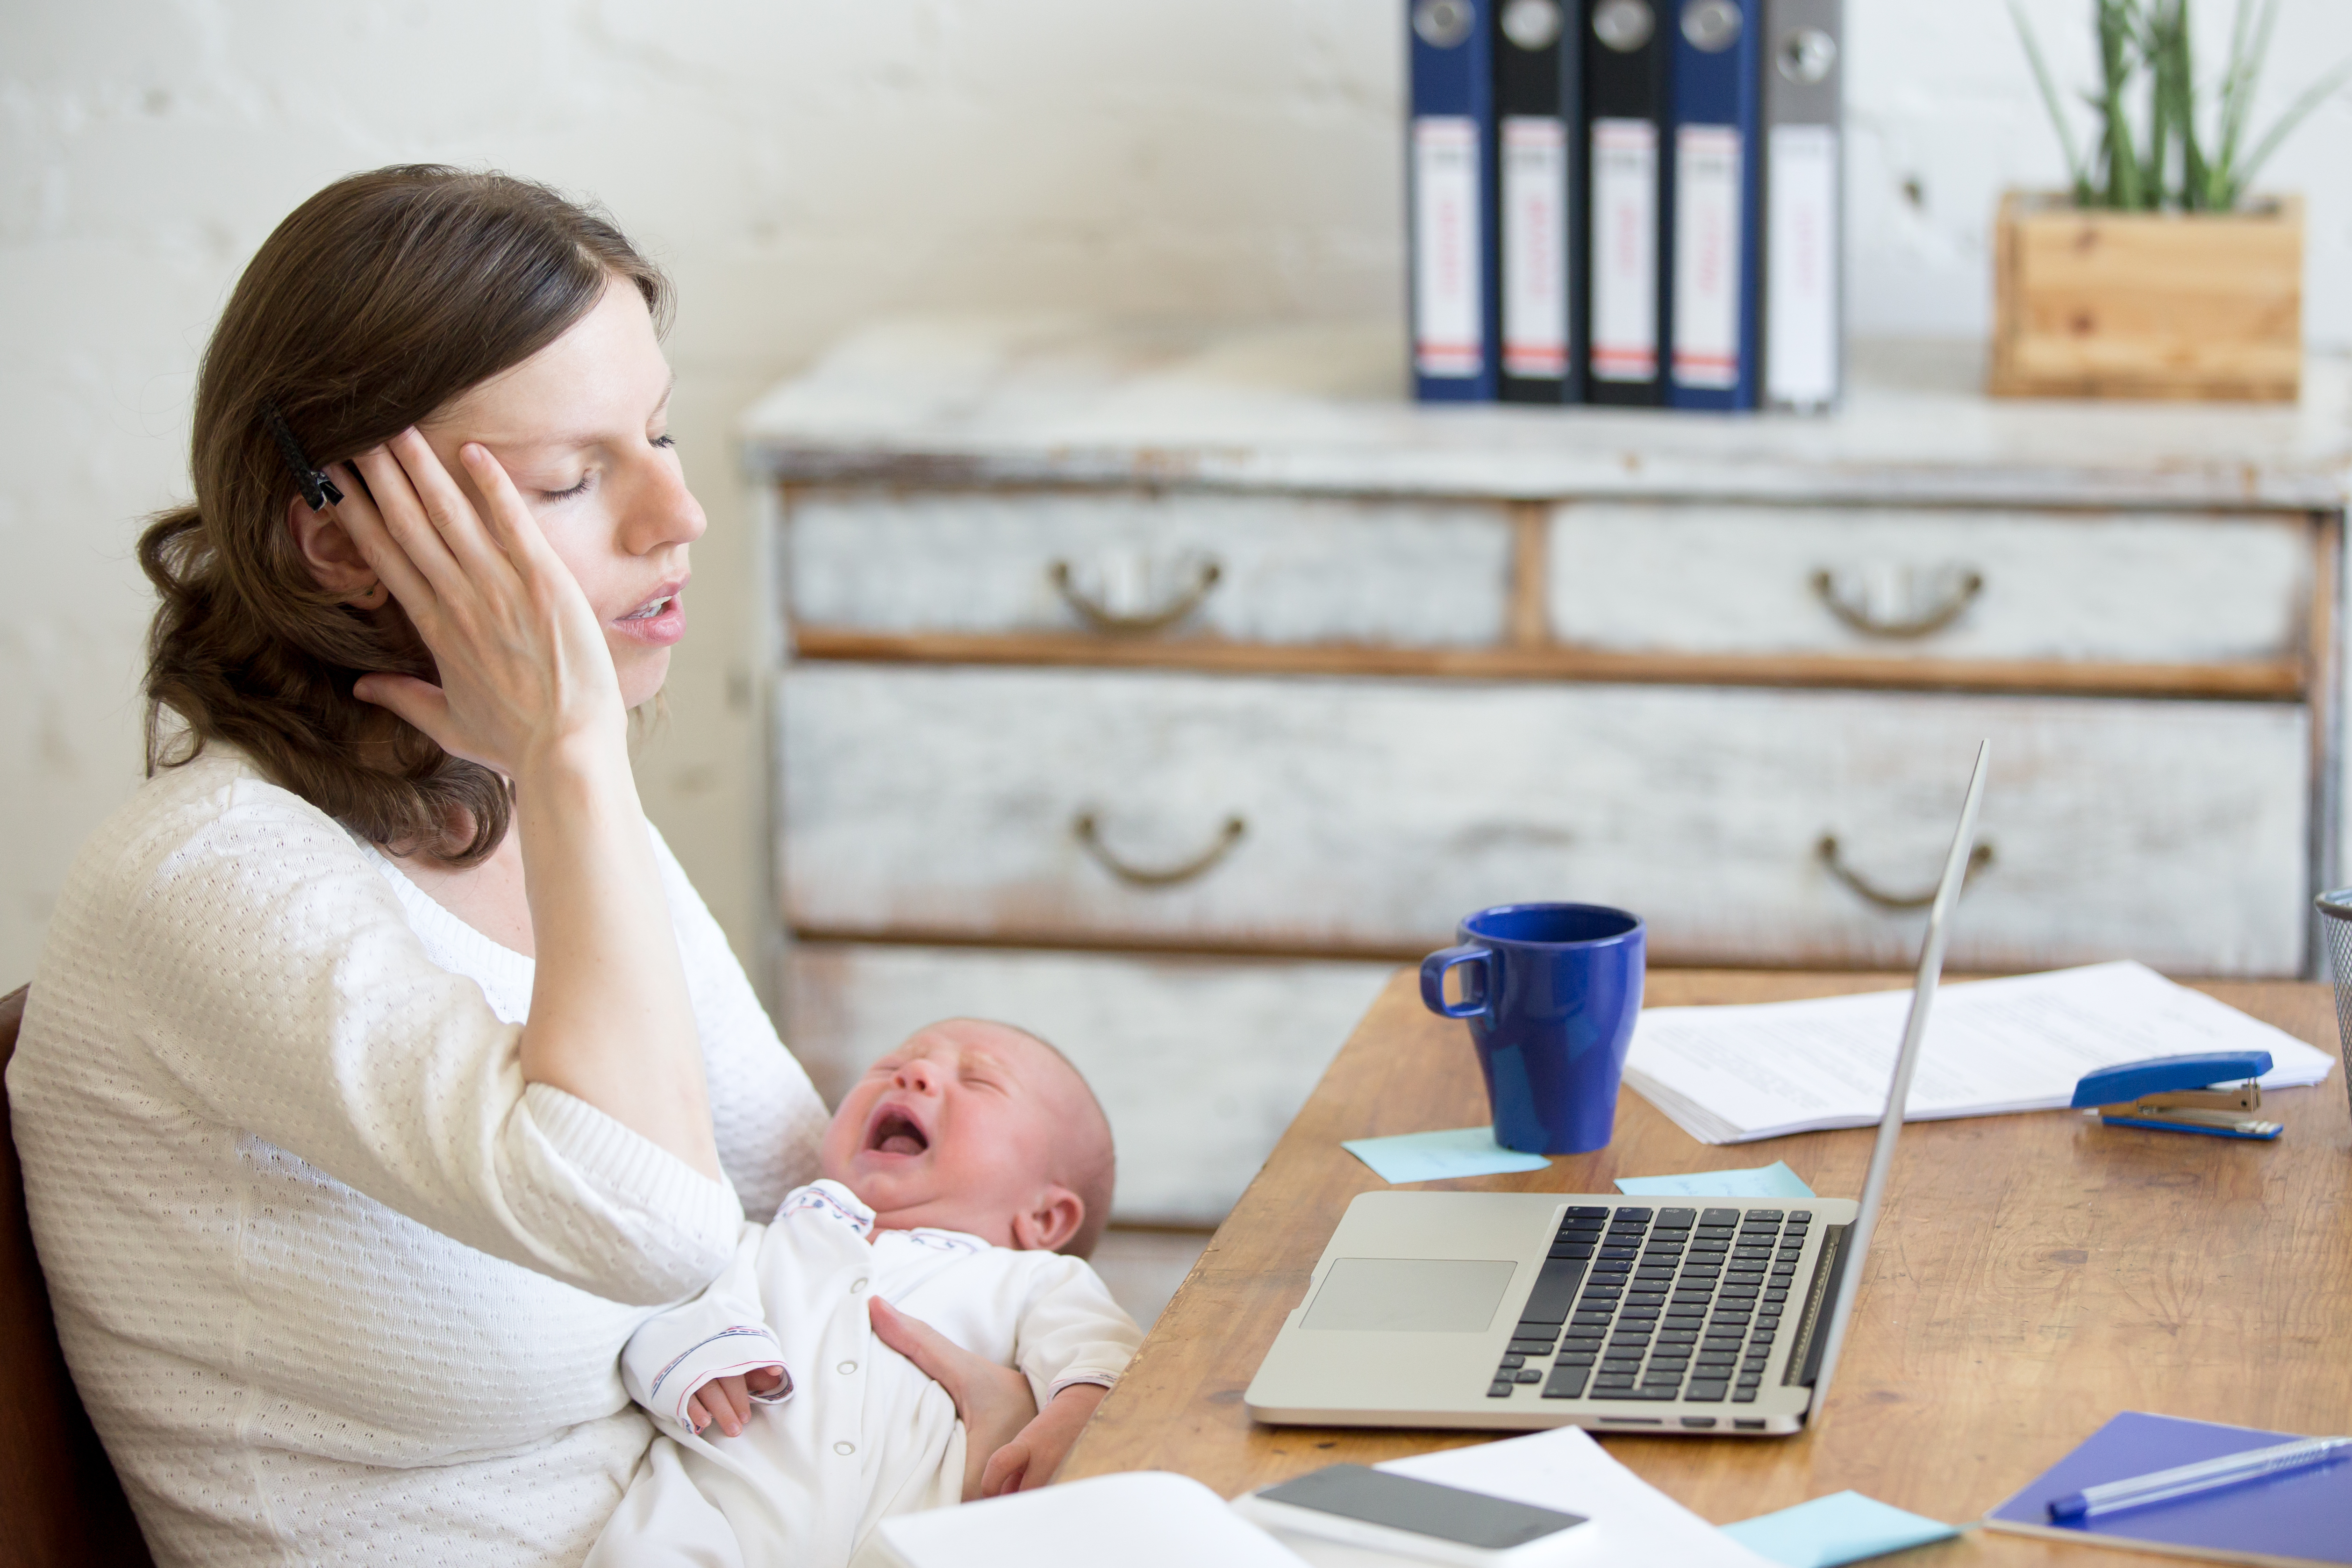 Une mère à l'air stressé avec son enfant | Source : Shutterstock